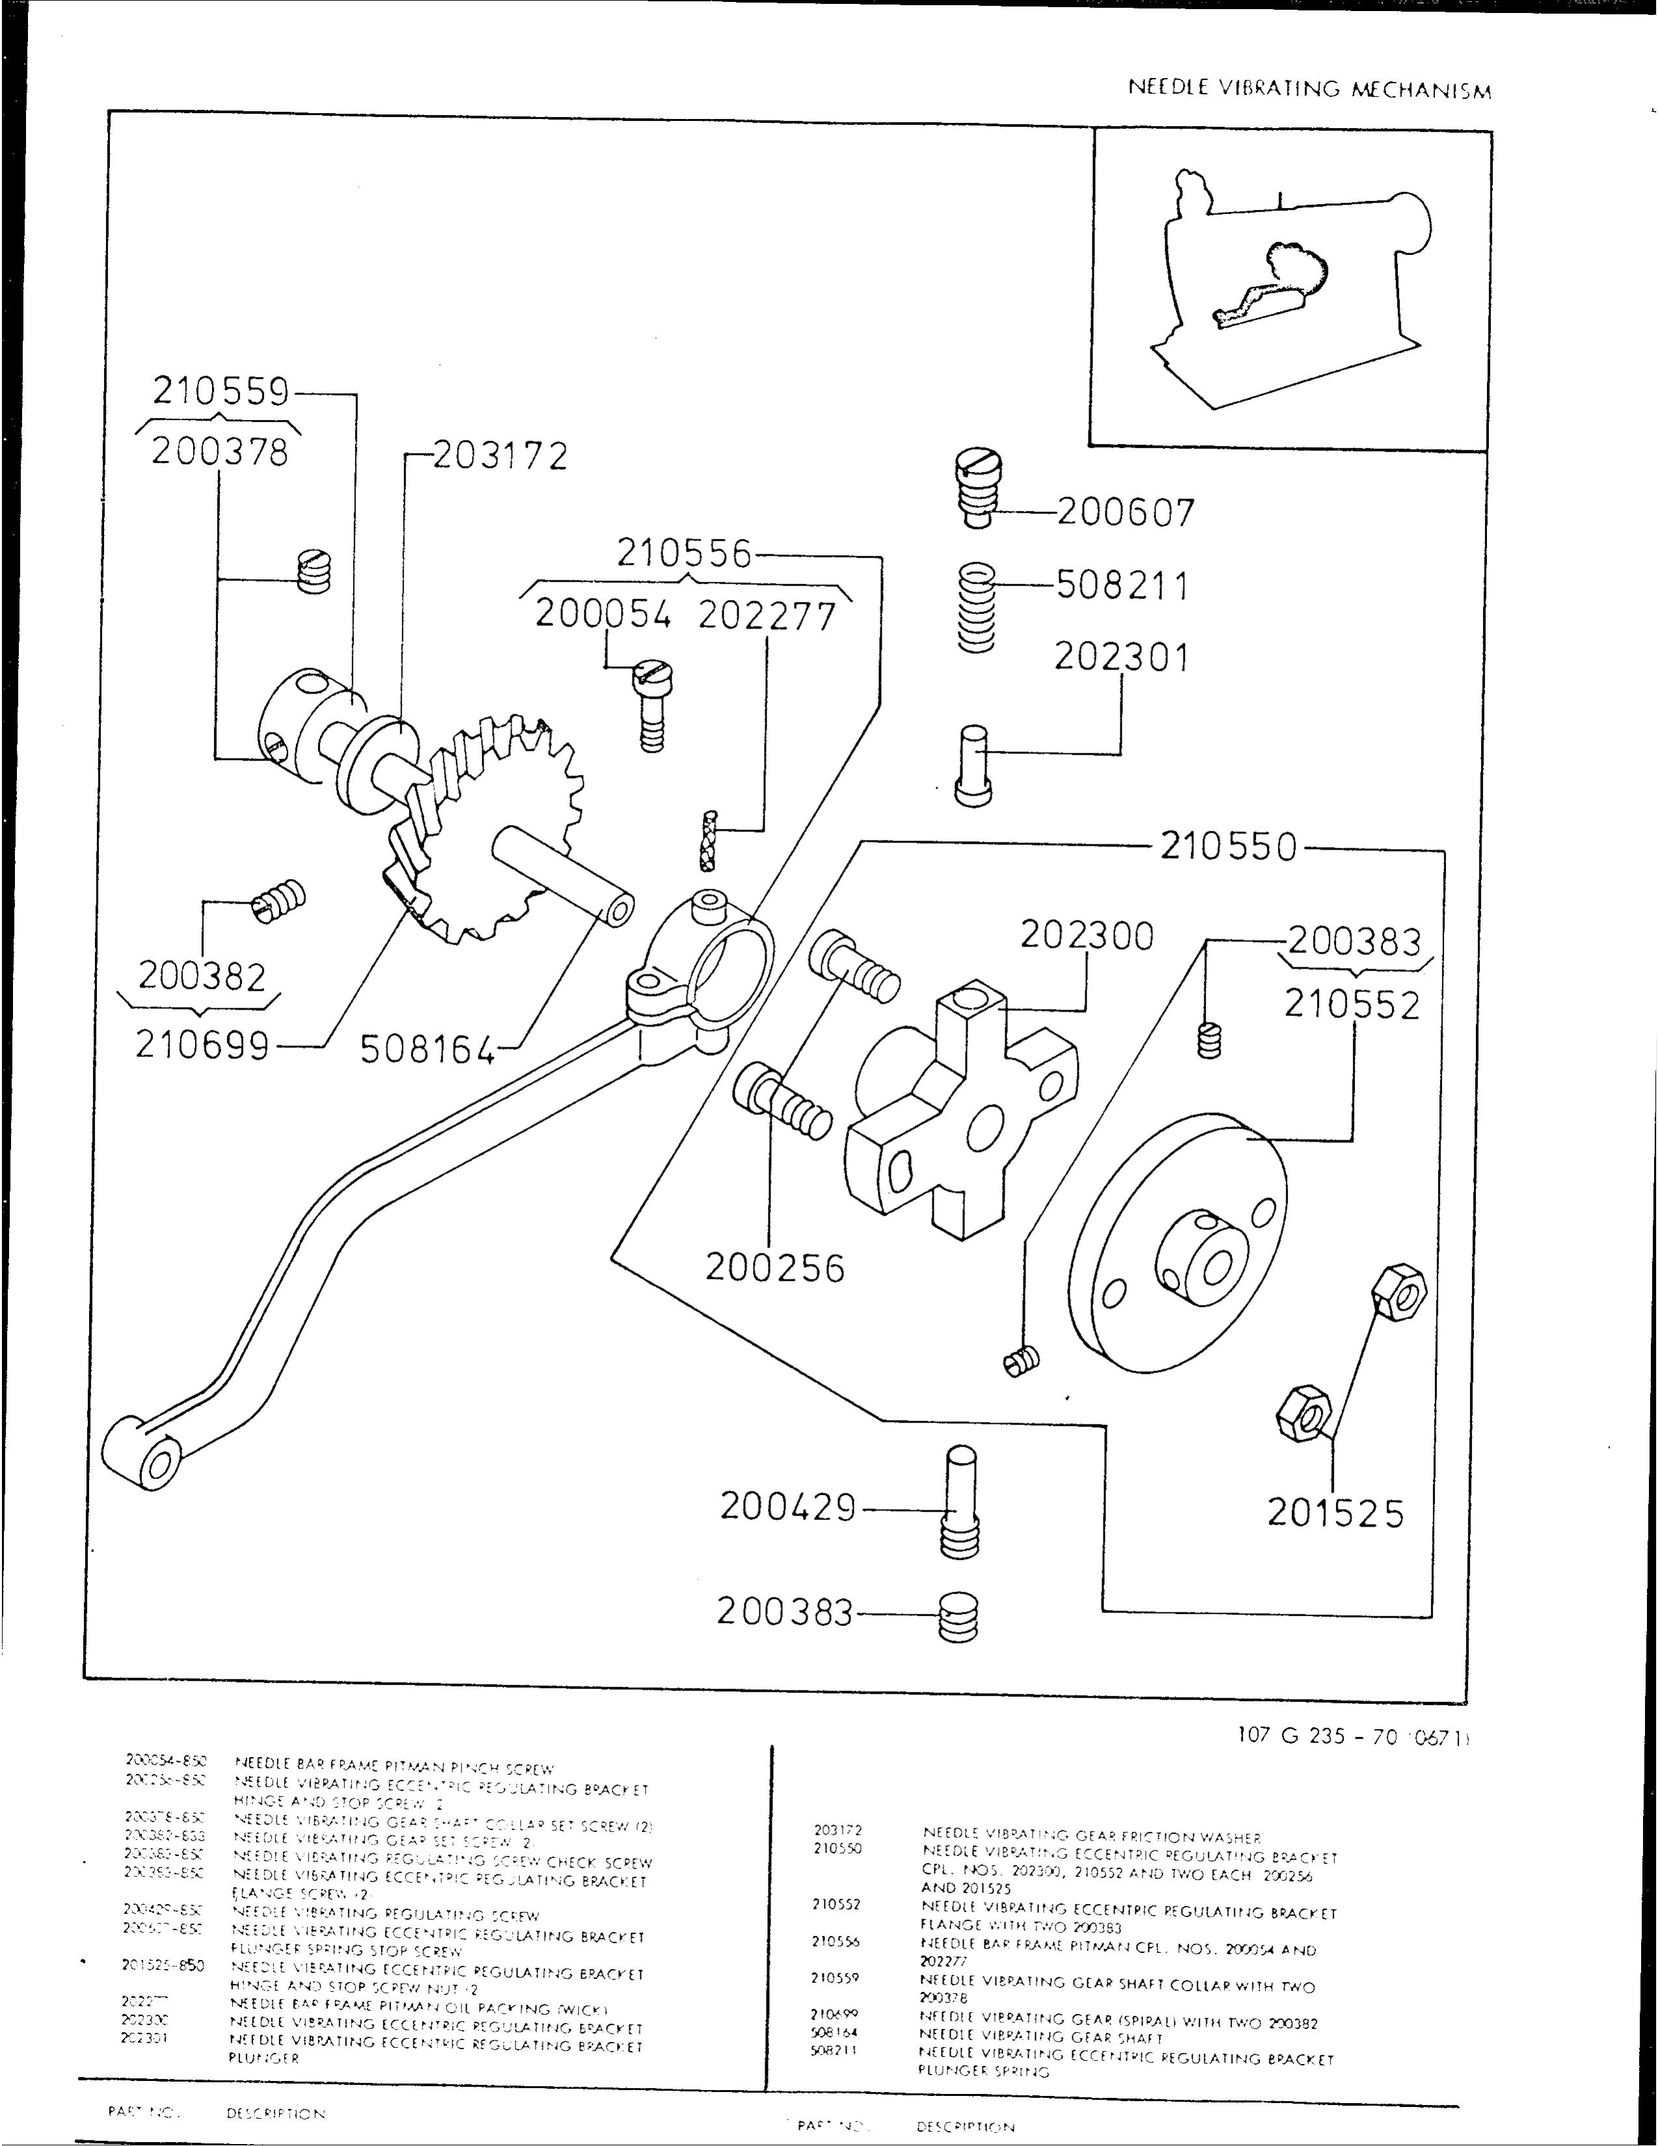 Singer 107G235 Sewing Machine User Manual (Page 8)